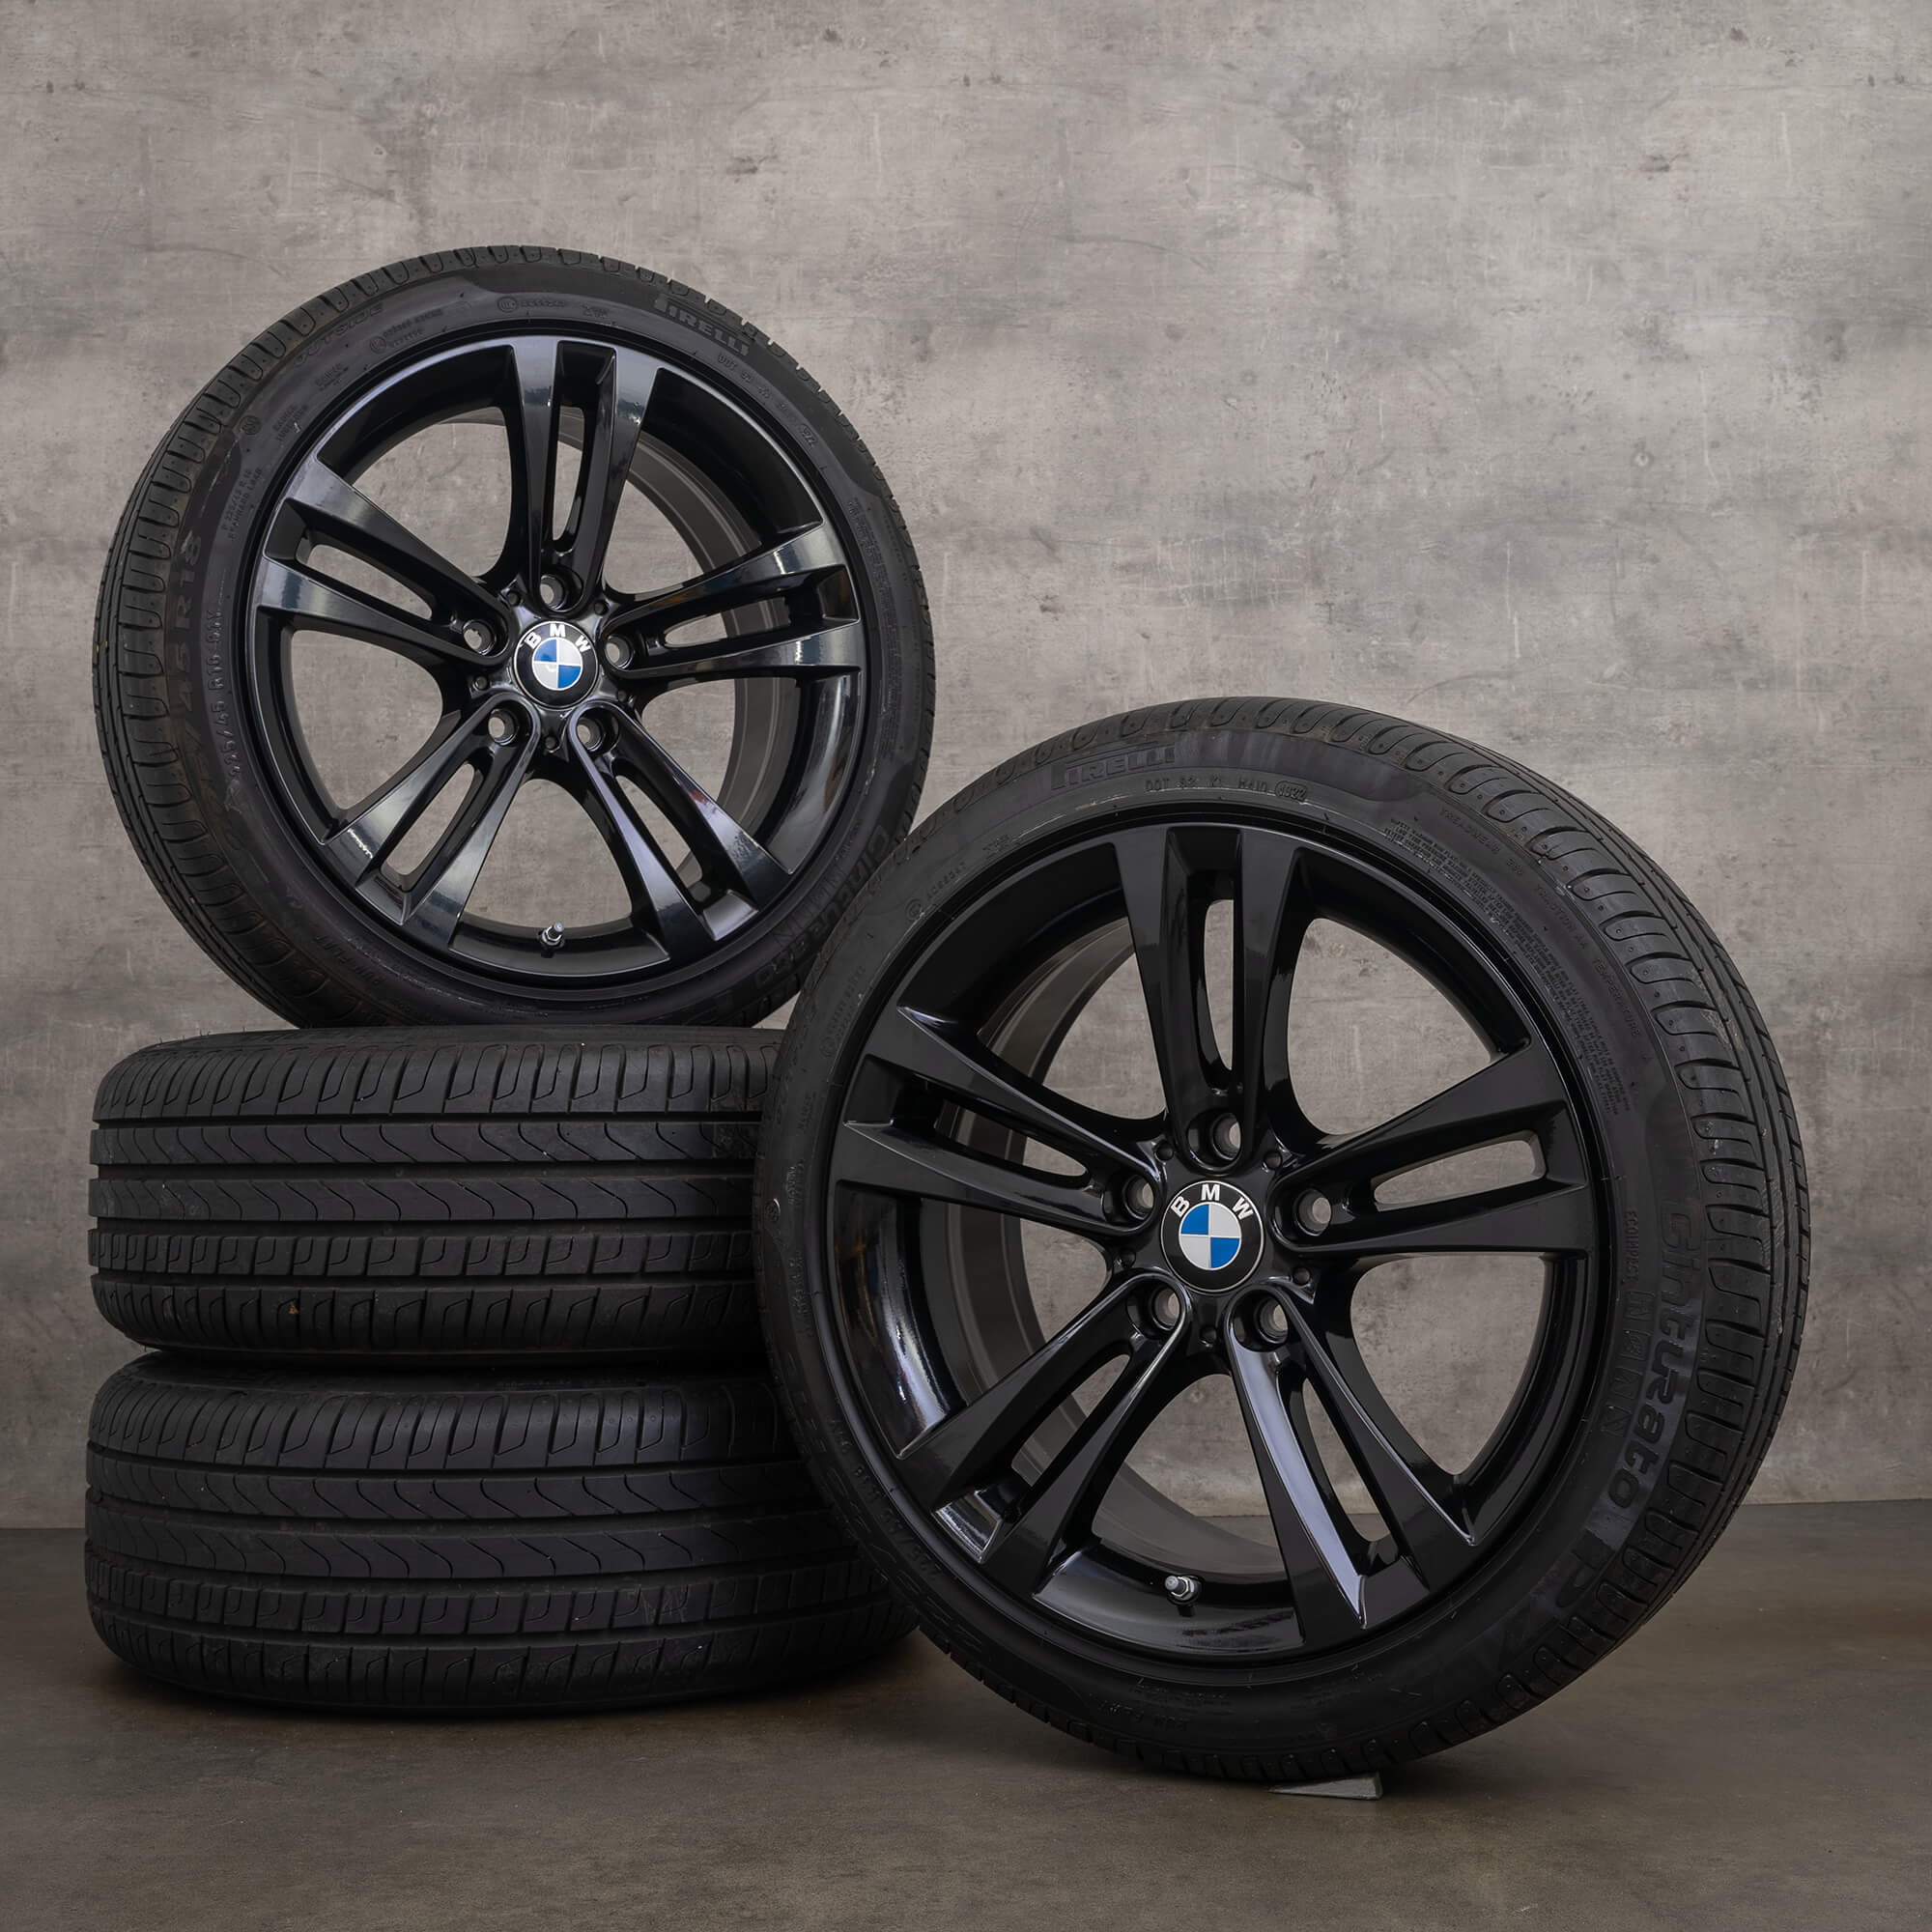 OEM BMW 3 Series F30 F31 4 F32 F33 F36 18 inch rims winter tires styling 397 6796247 black high gloss